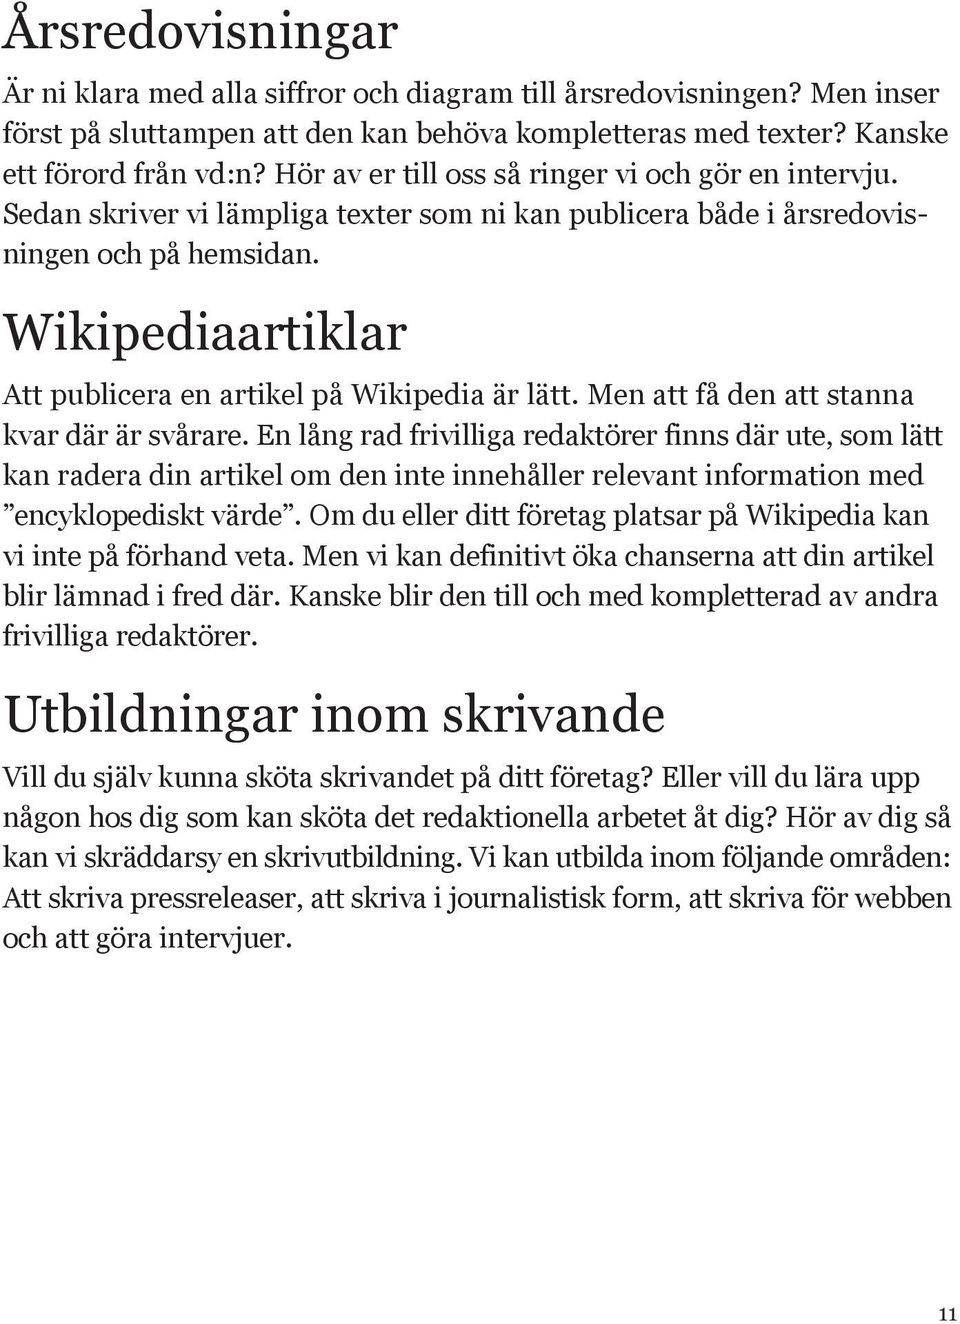 Wikipediaartiklar Att publicera en artikel på Wikipedia är lätt. Men att få den att stanna kvar där är svårare.